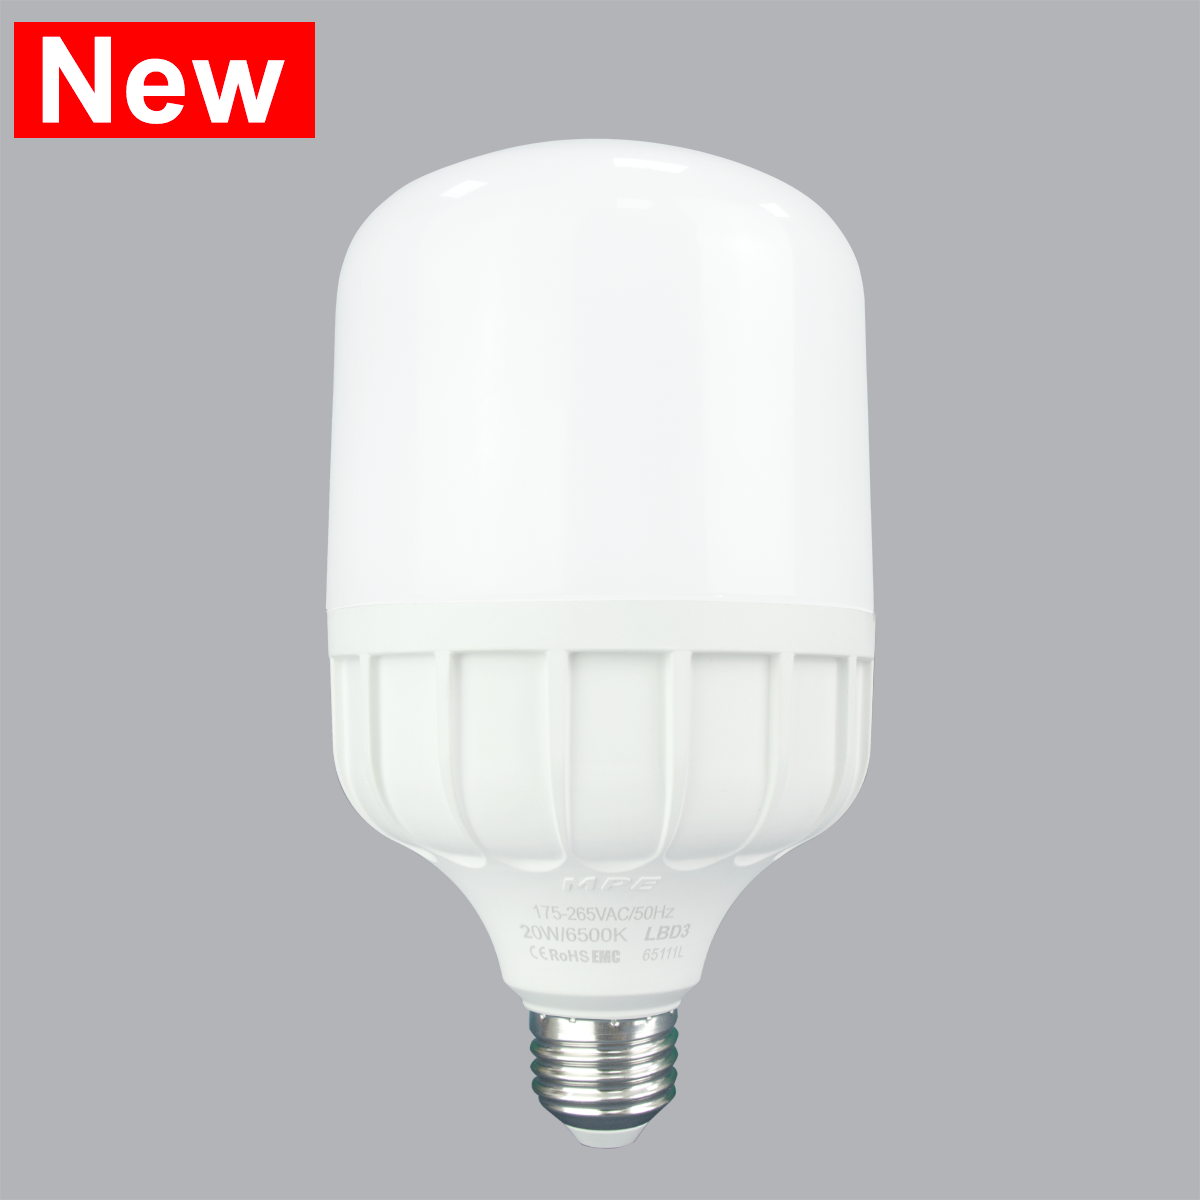 Đèn led Bulb chống ẩm 20W MPE, 80X152 mm - LBD3-20T ánh sáng trắng